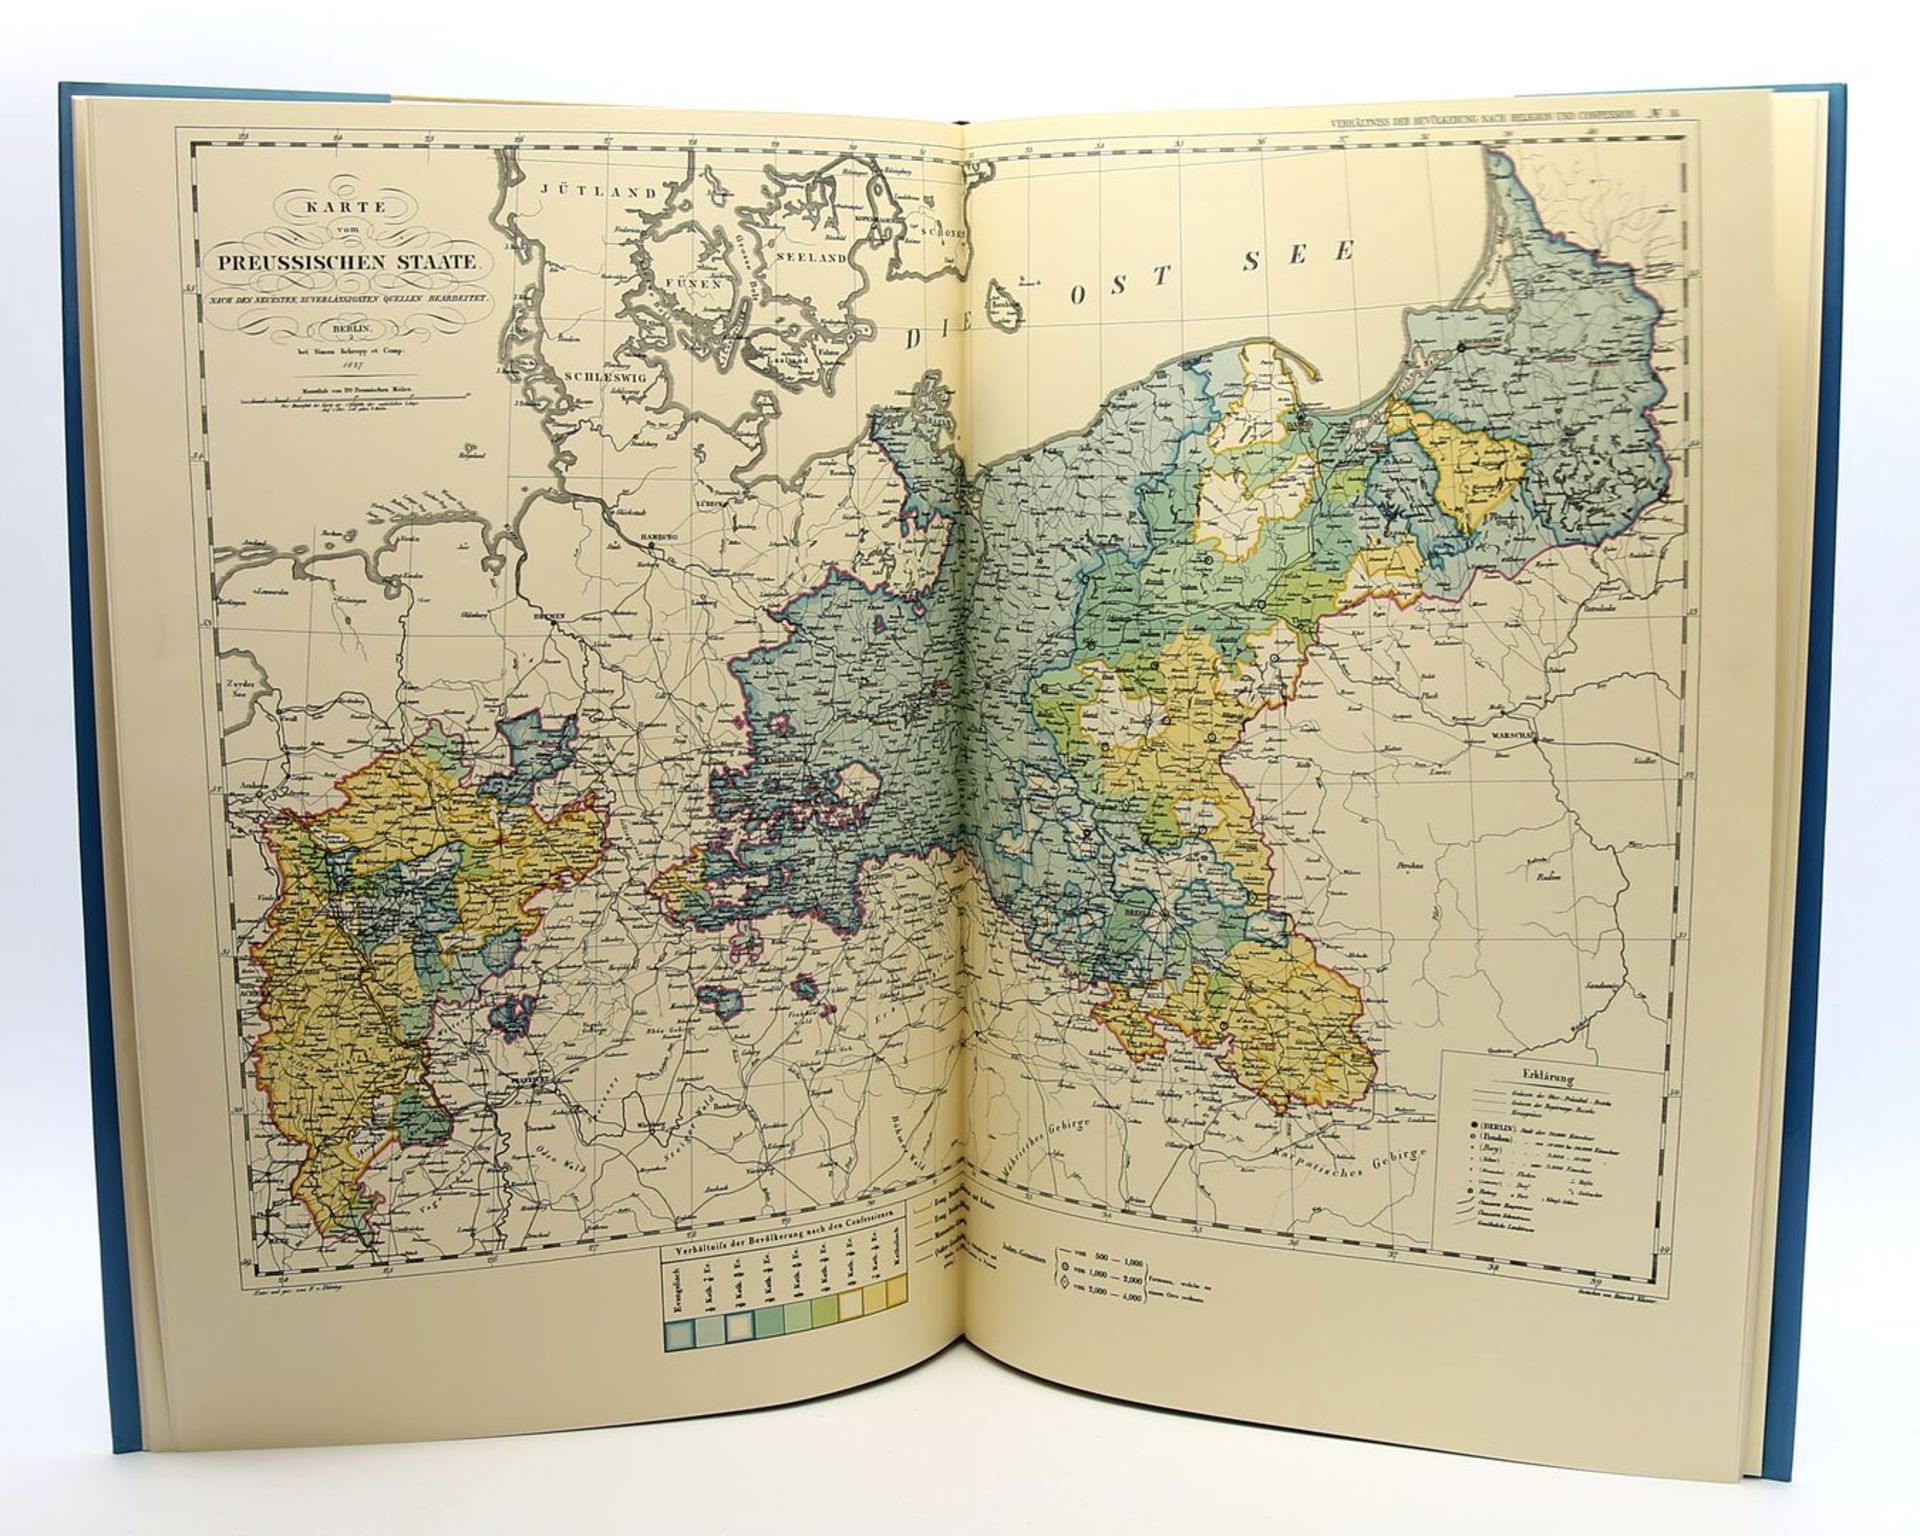 Administrativer statistischer Atlas des Preußischen Staates von 1828.